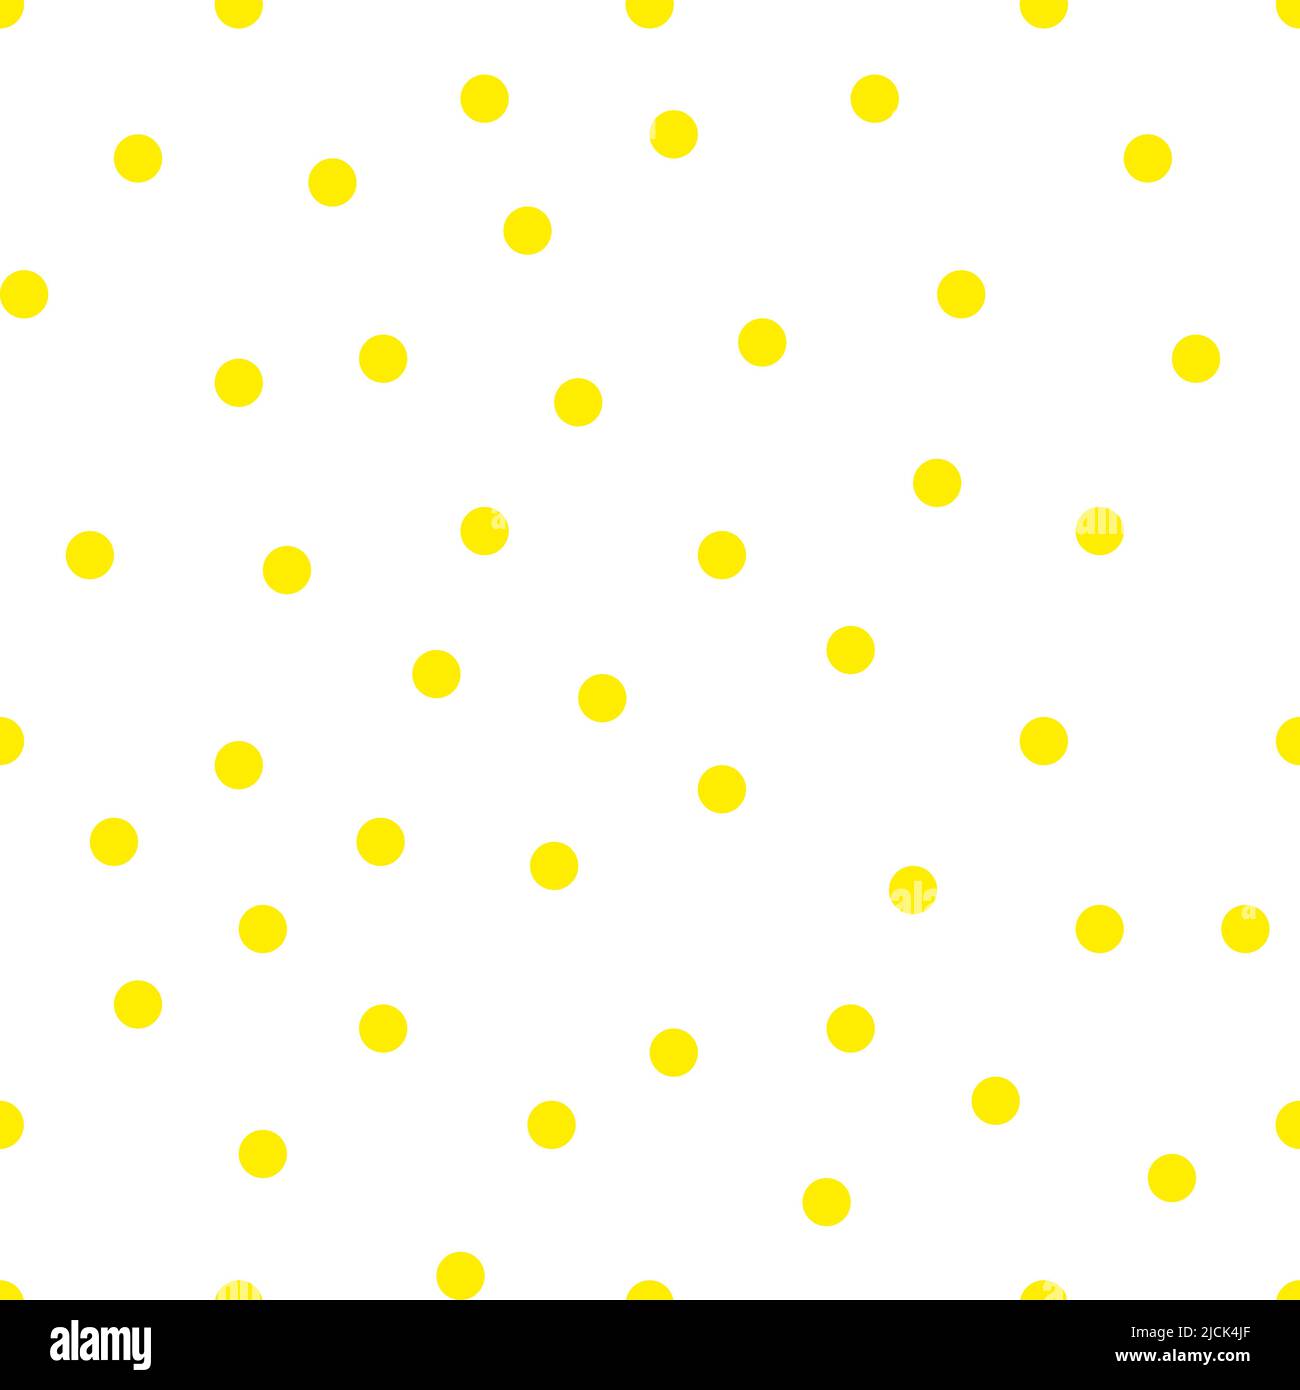 Gelb Polka Dot Pattern. Vector dots nahtlose Ornament für Stoff drucken, Geschenkpapier, Tapeten. 60er - 70er Jahre Design, lebendige positive Stil Stock Vektor